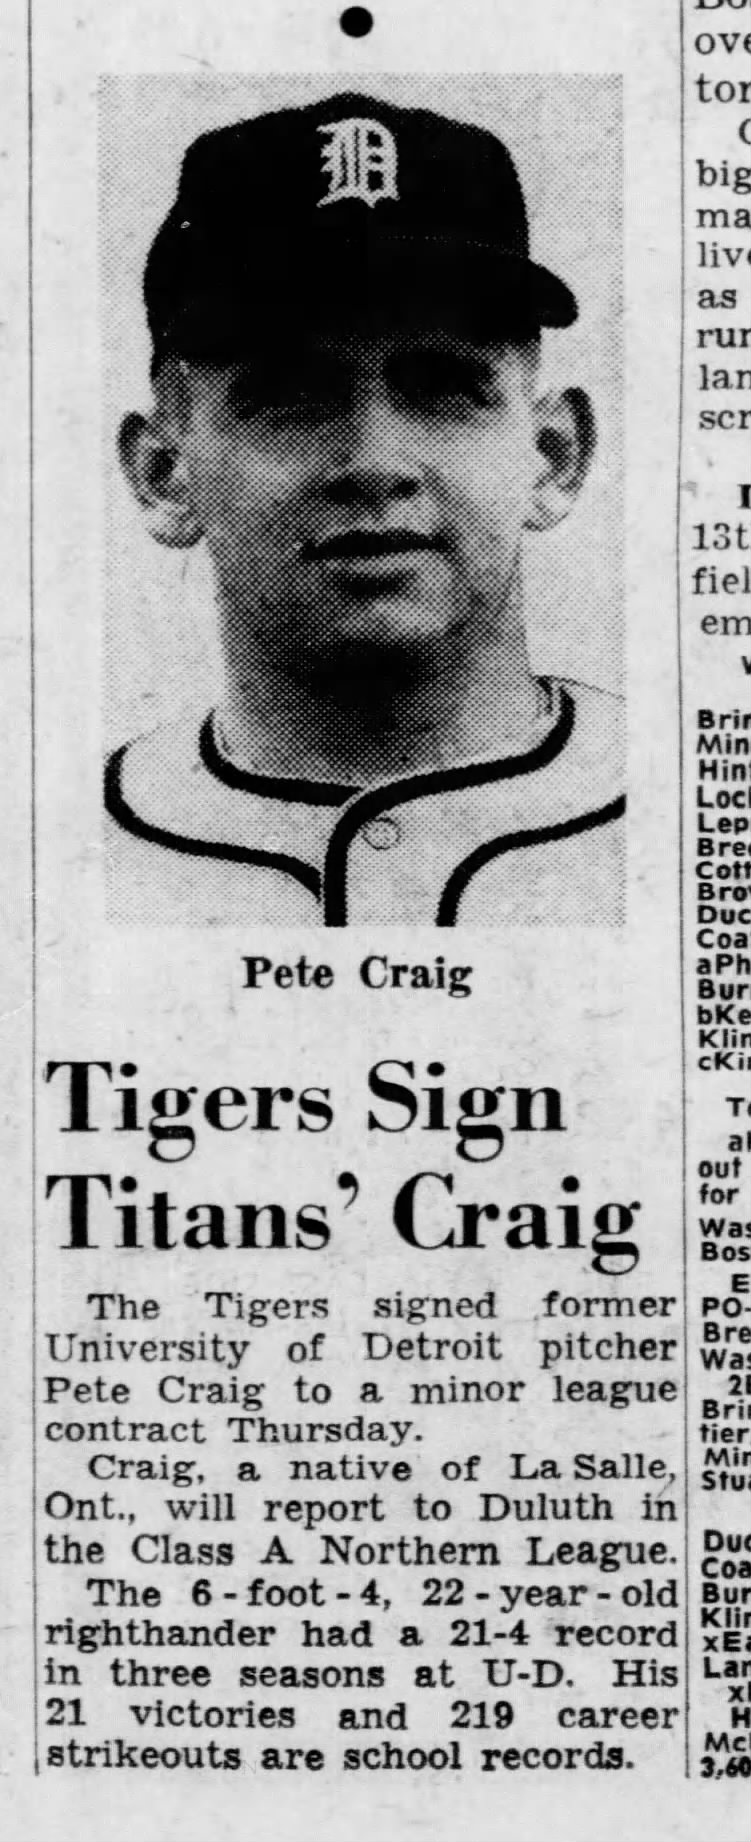 Tigers Sign Titans' Craig